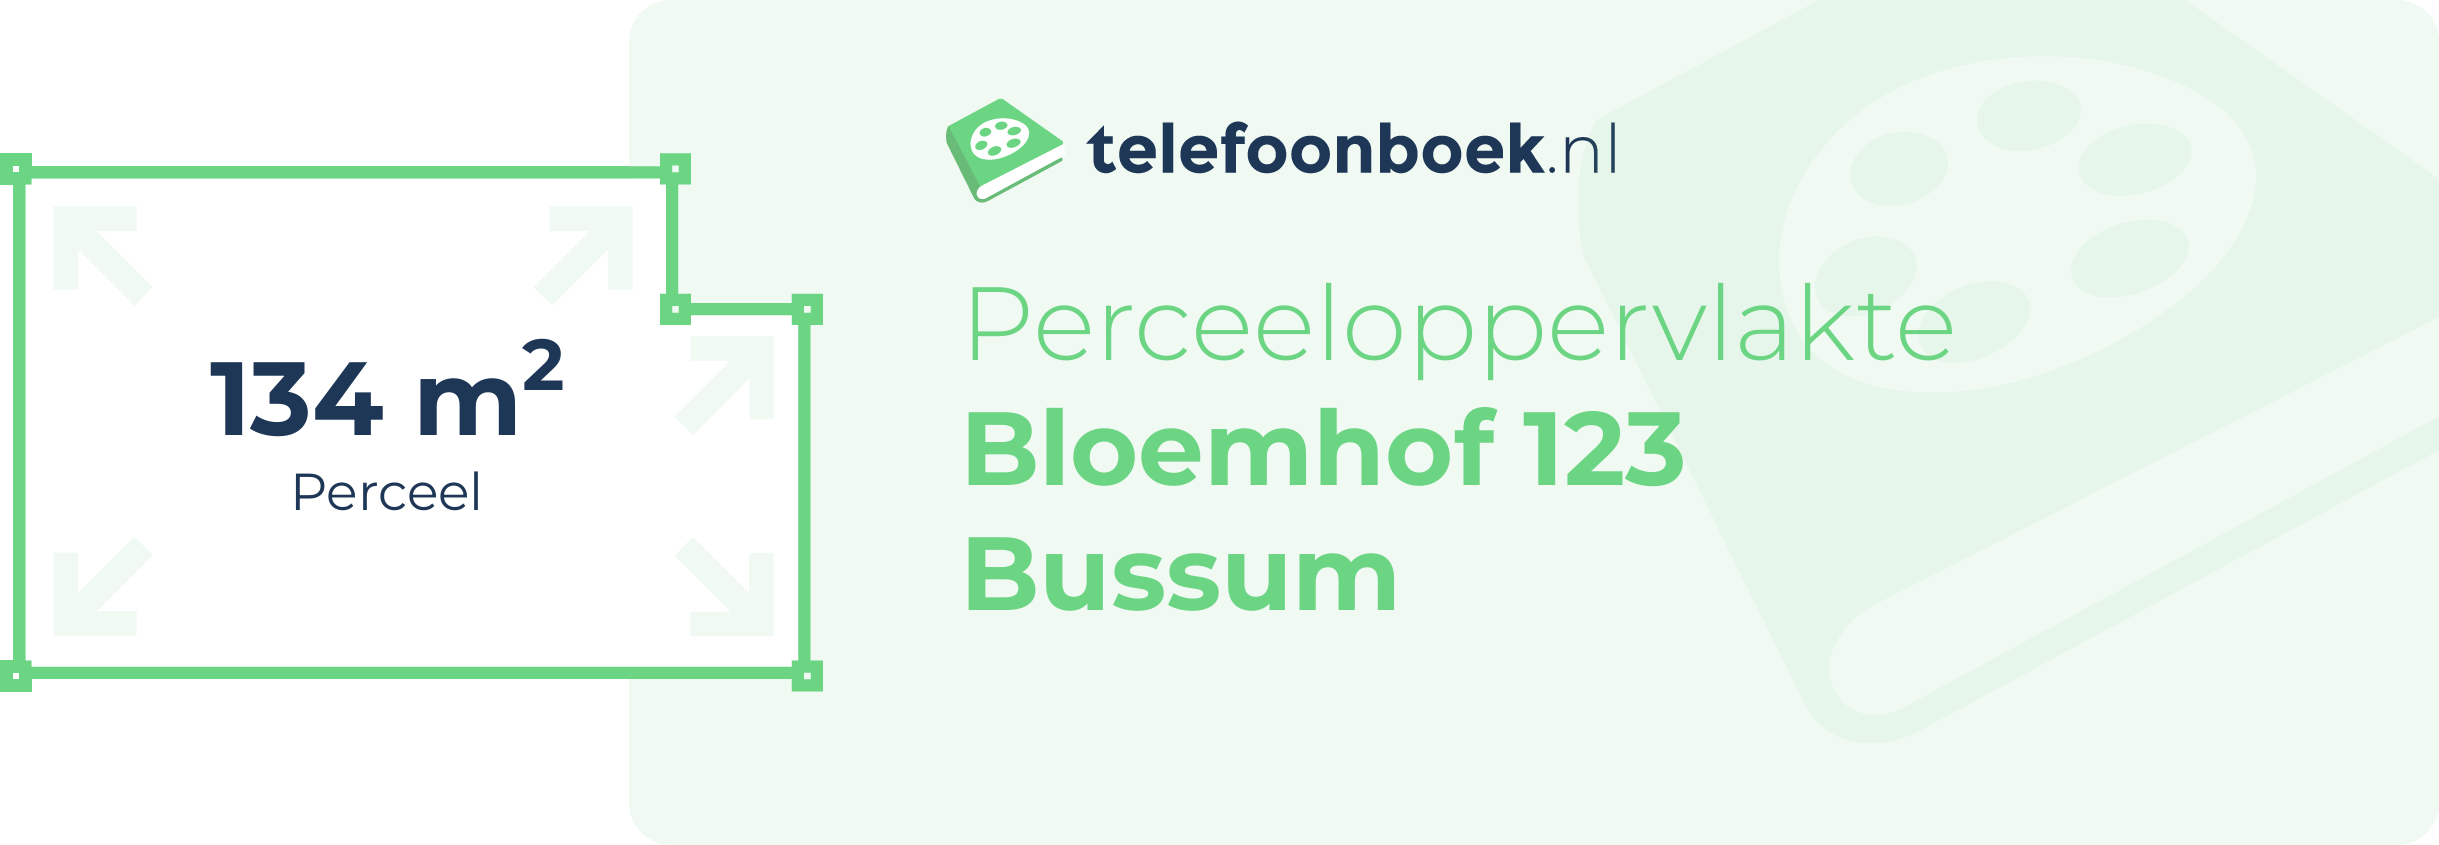 Perceeloppervlakte Bloemhof 123 Bussum